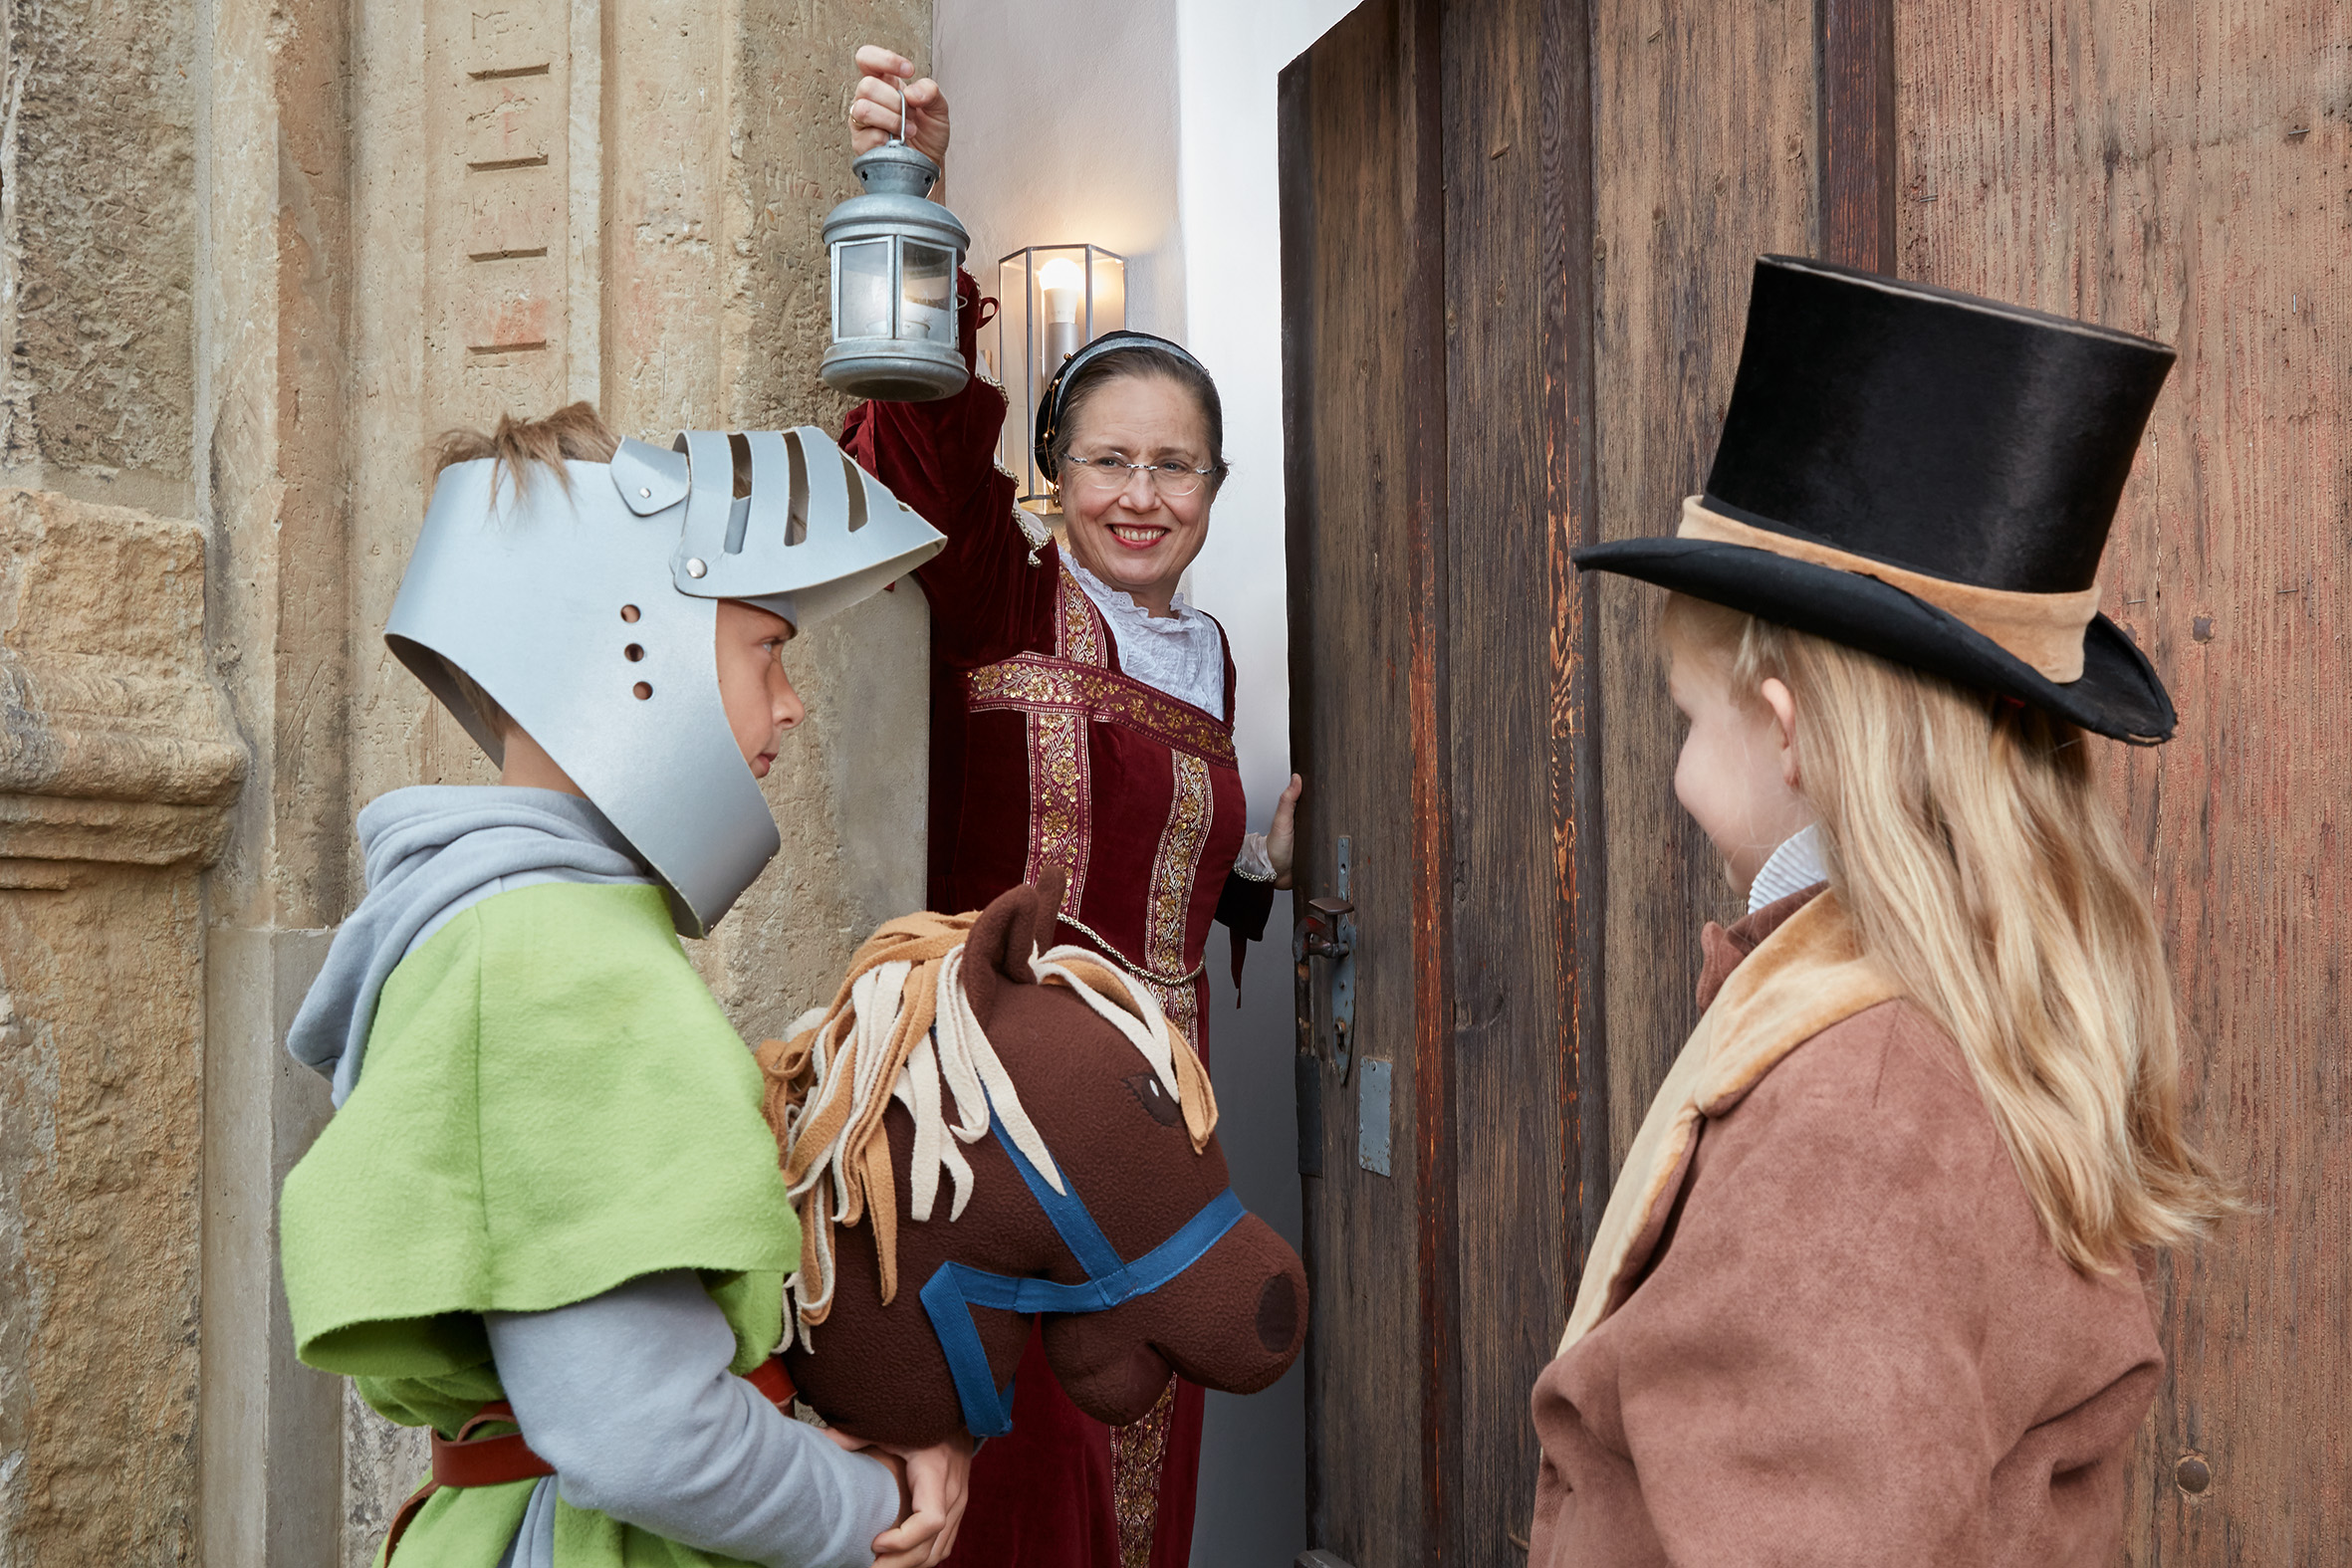 Die Museumspädagogin öffnet das hölzerne Tor mit erhobener Laterne. Sie trägt ein mittelalterliches Kostüm. Zwei verkleidete Kinder wollen hinein: Ein Junge mit Steckenpferd und Ritterhelm sowie ein Mädchen mit schwarzem Zylinder.